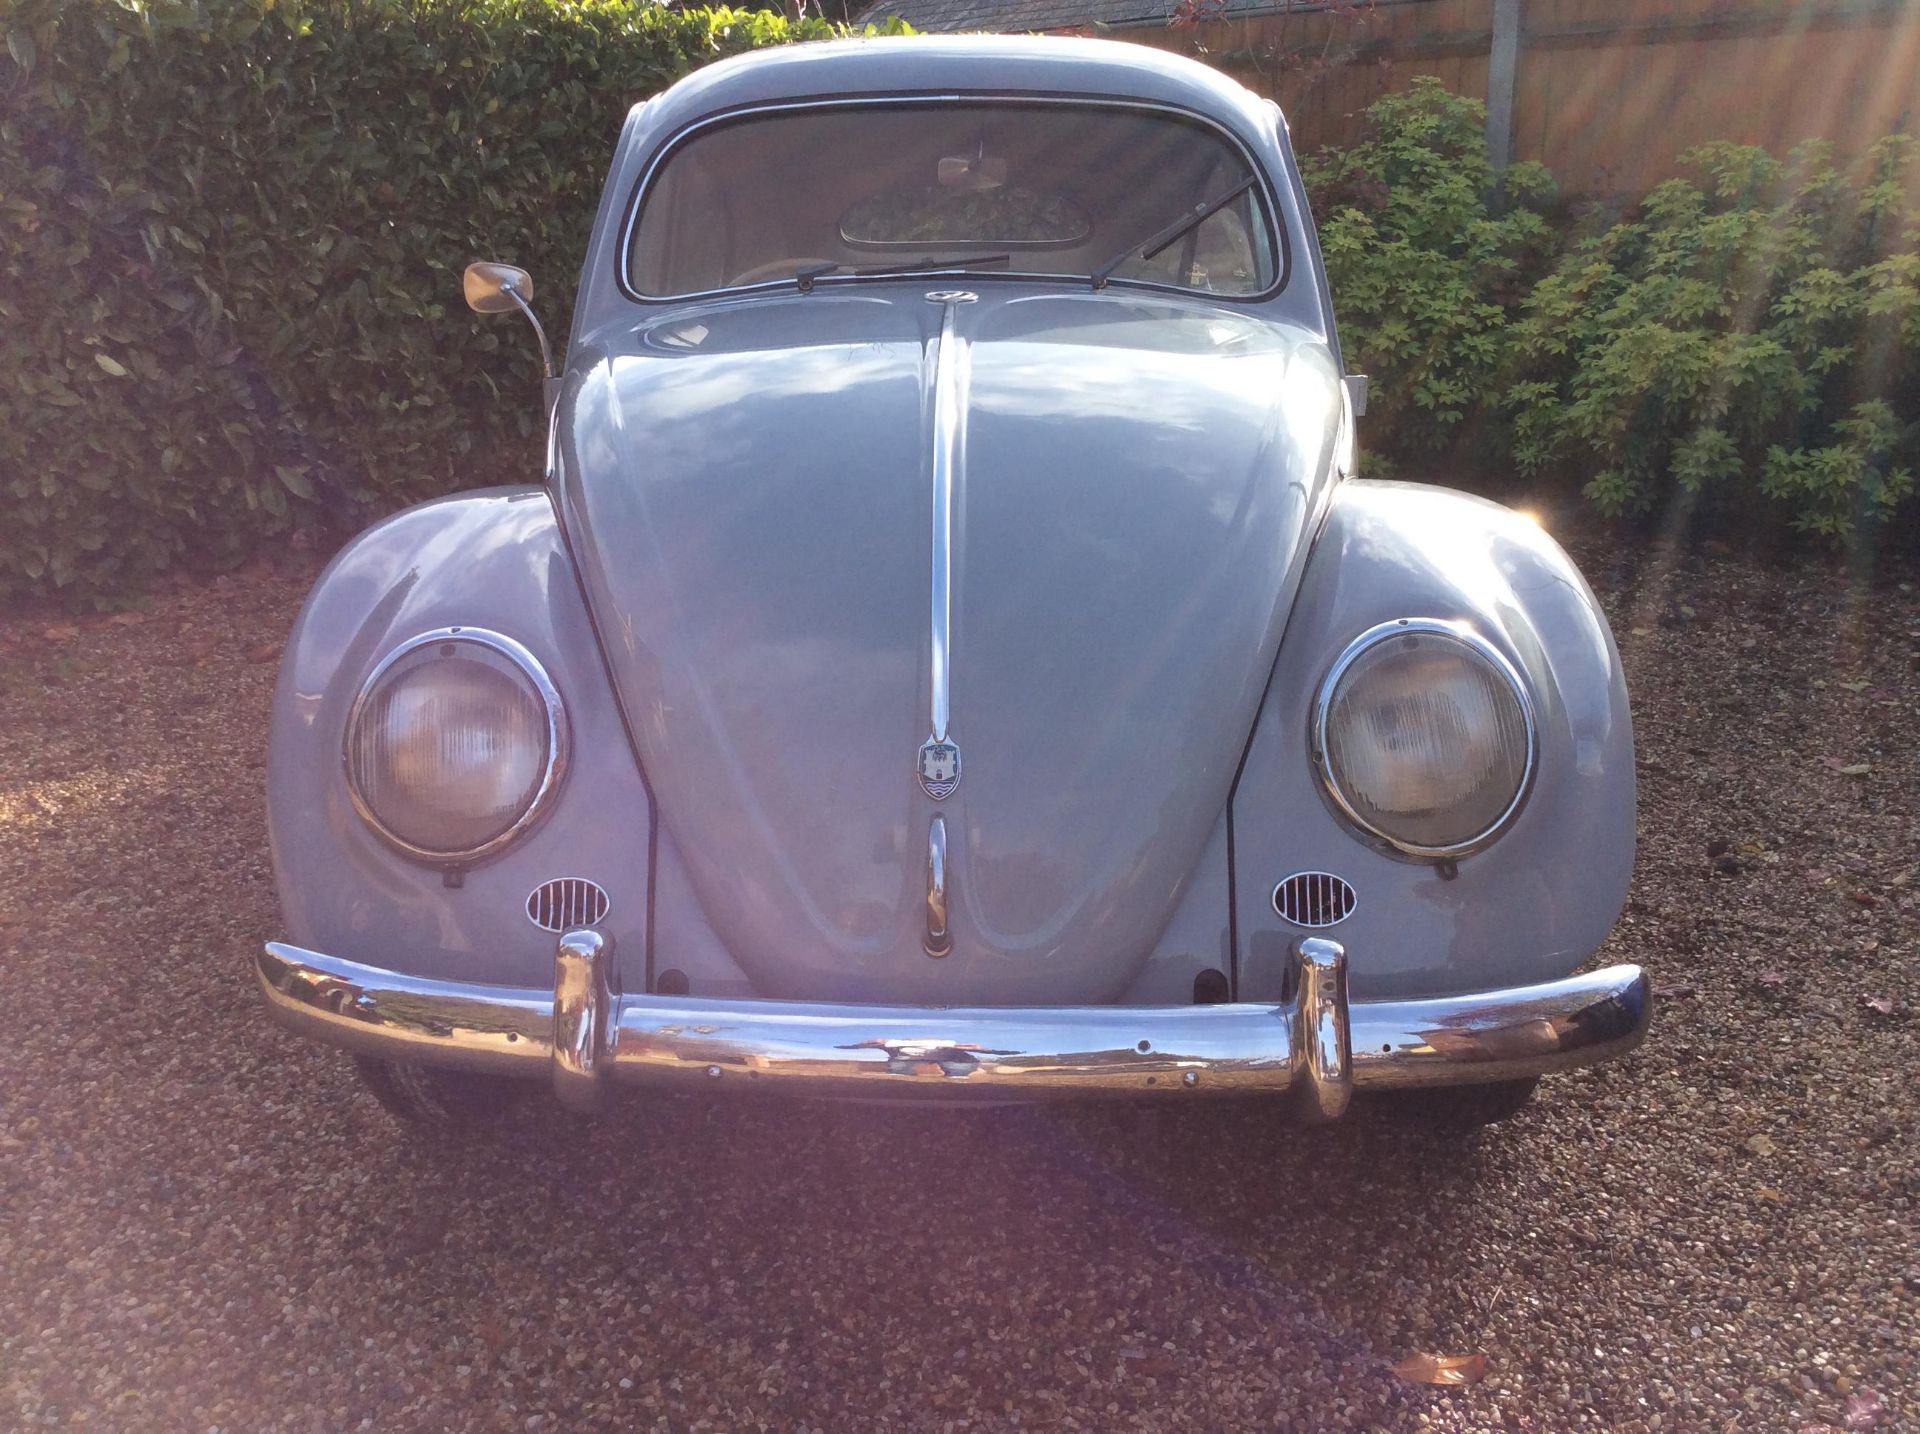 1954 Oval rear window Beetle - Image 2 of 22